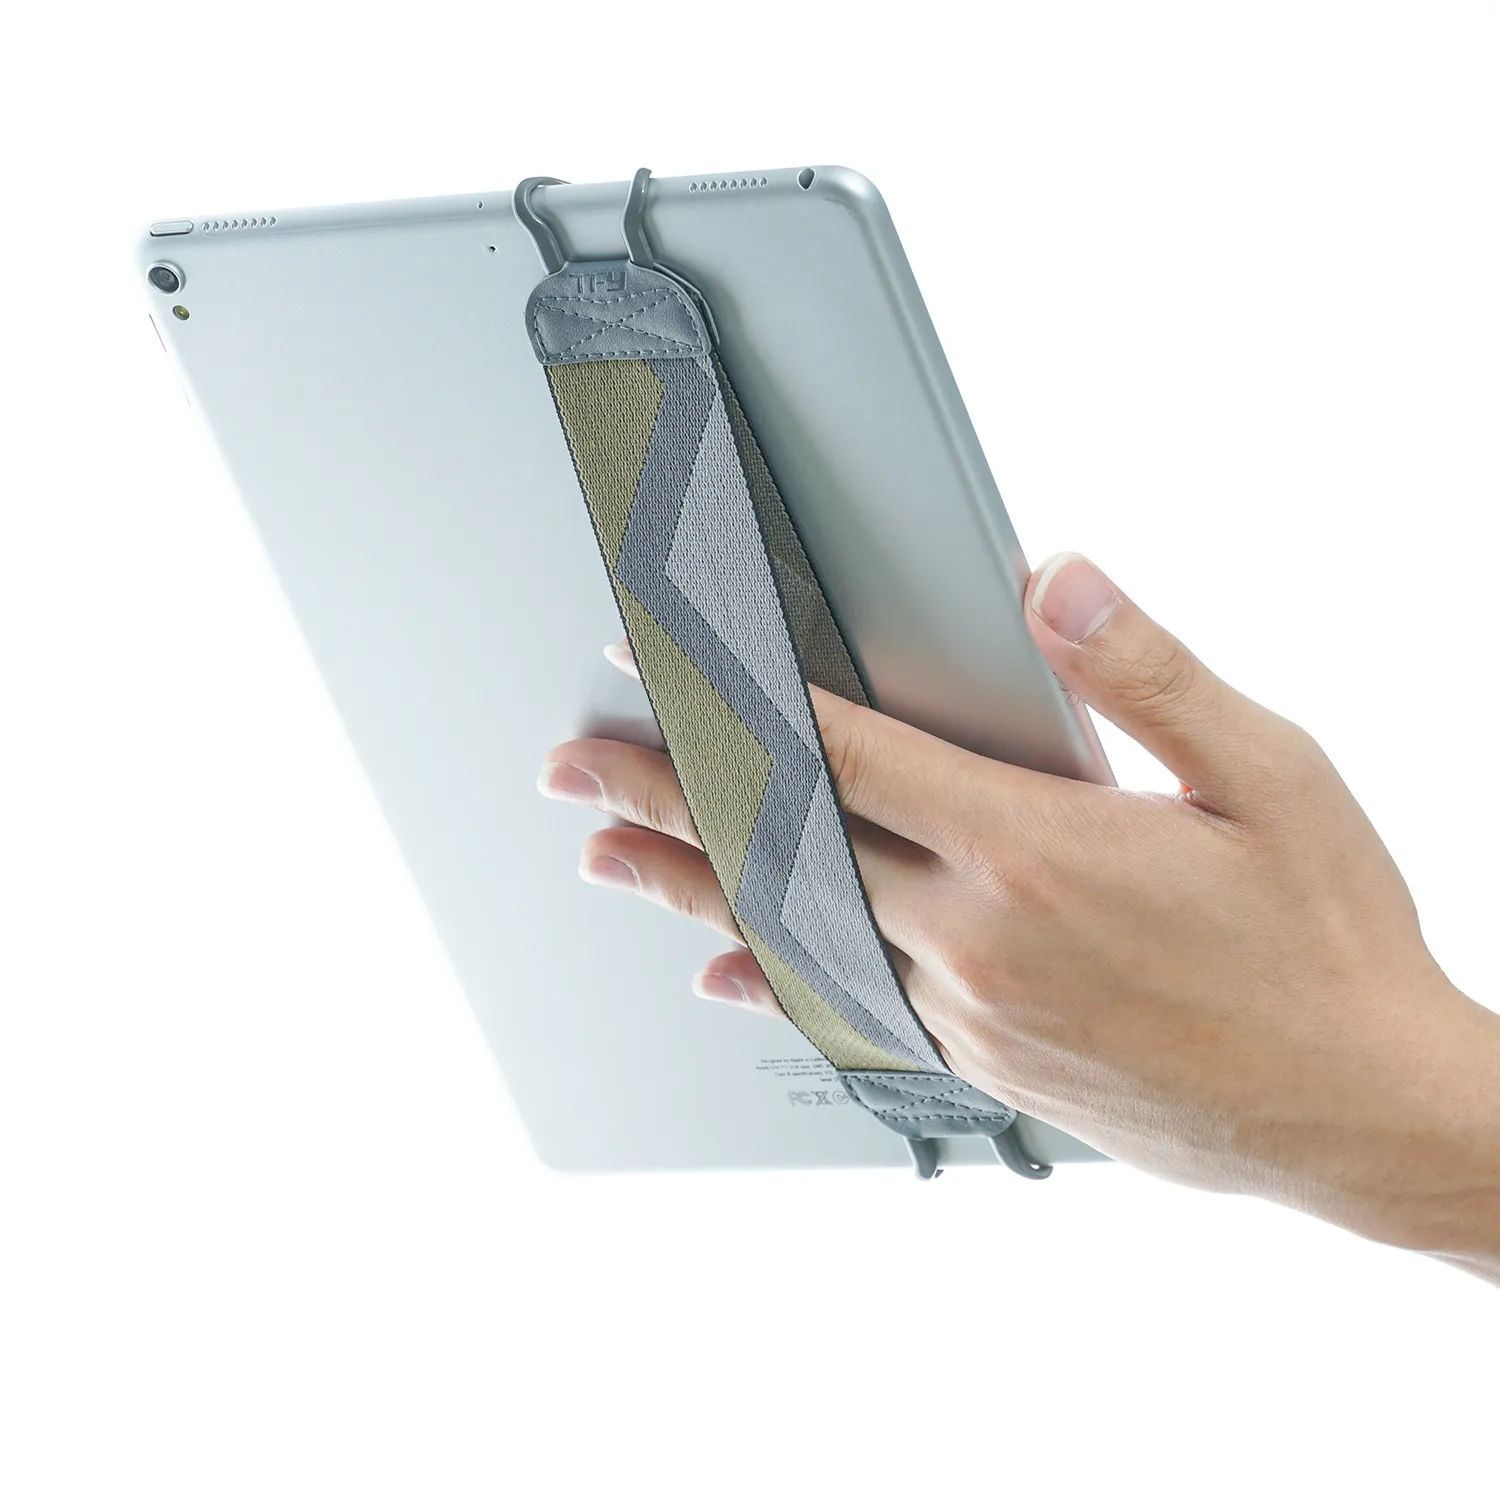 Support de tablette à dragonne antidérapante TFY pour iPad Pro / mini 4 / Air 2, Samsung Galaxy - Gris